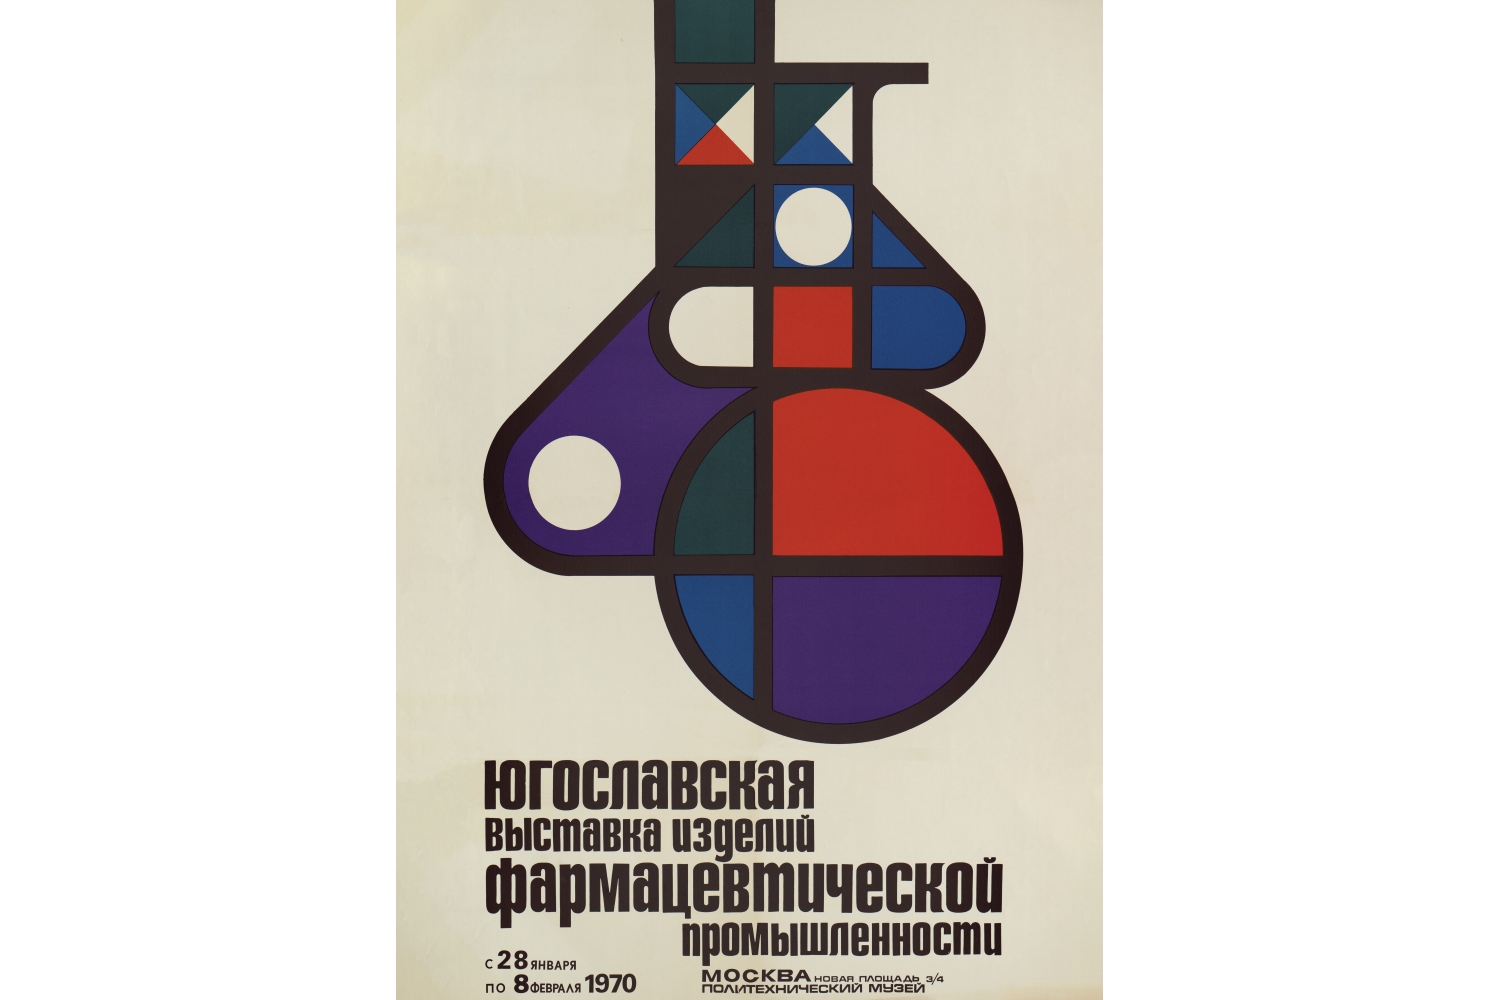 Плакат «Афиша Югославской выставки фармацевтической промышленности»